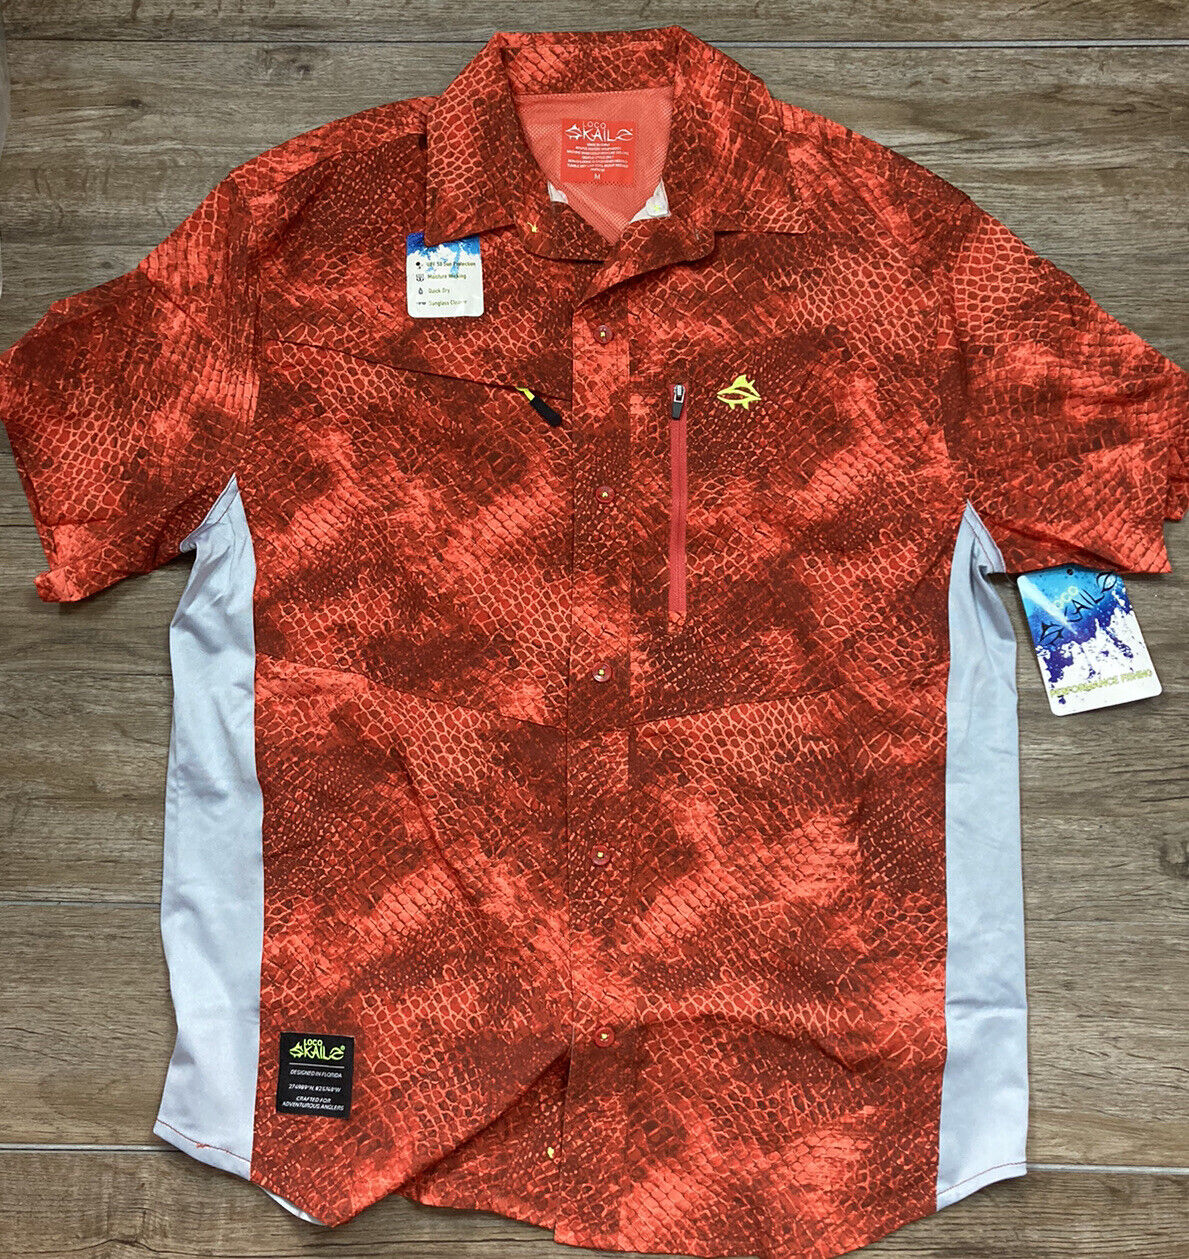 NEW Loco Skailz Mens Medium Vented Fishing Shirt Moisture Wicking Red NWT $44